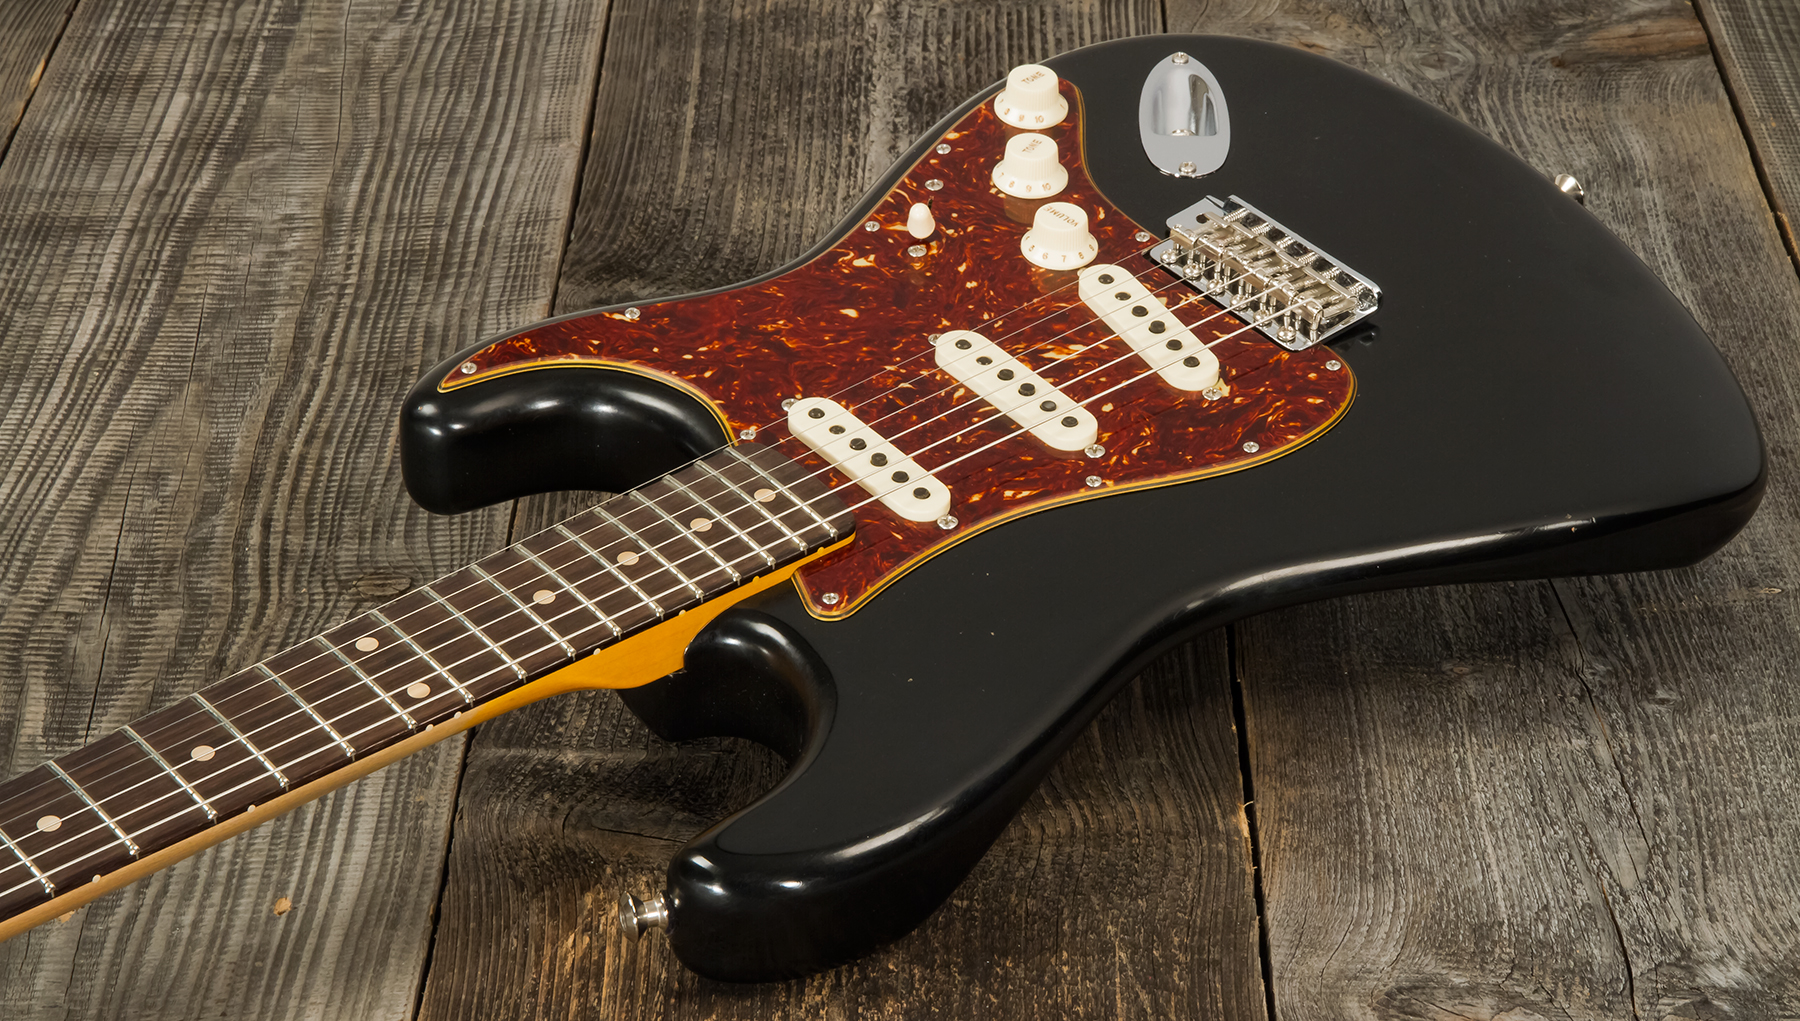 Fender Custom Shop Strat Postmodern 3s Trem Rw #xn13616 - Journeyman Relic Aged Black - Elektrische gitaar in Str-vorm - Variation 2